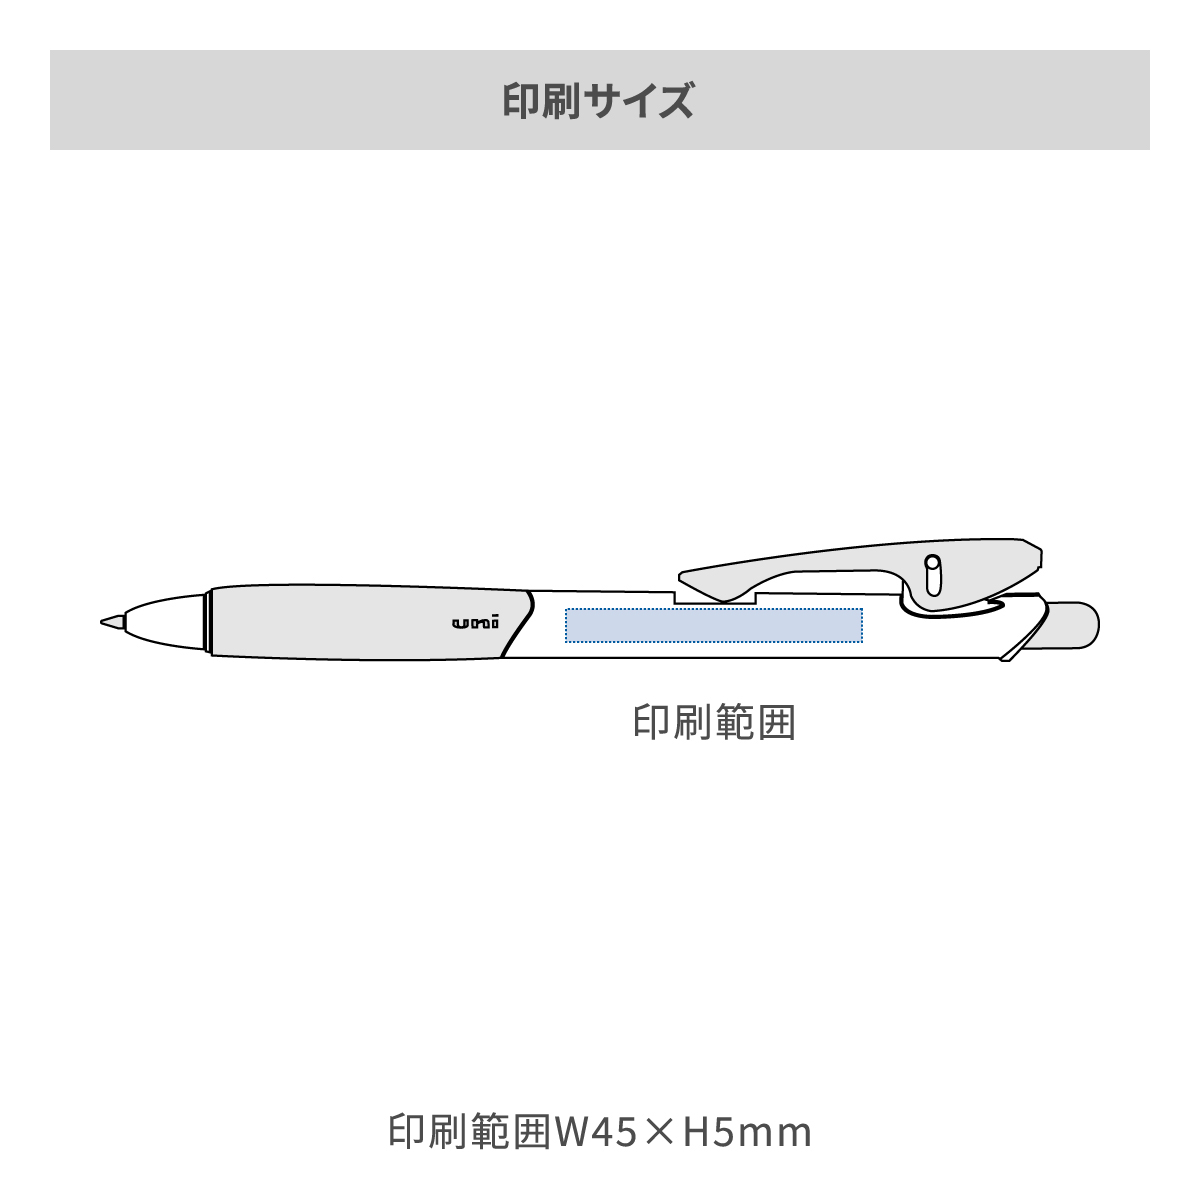 三菱鉛筆 クリフター 白軸 0.7mmの名入れ範囲